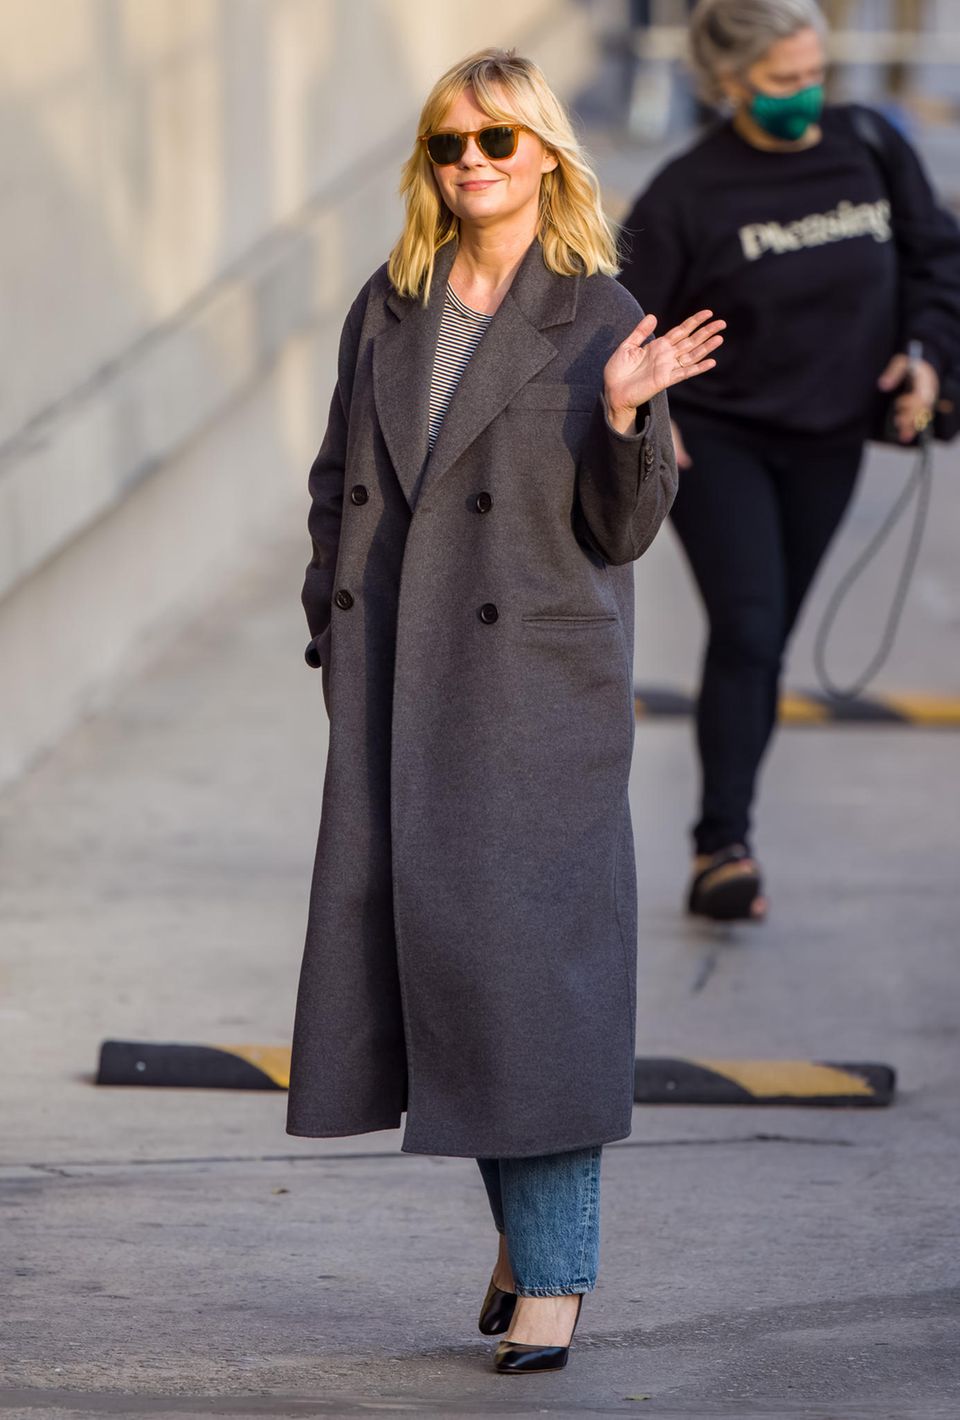 Gesichtet: Kirsten Dunst in Los Angeles